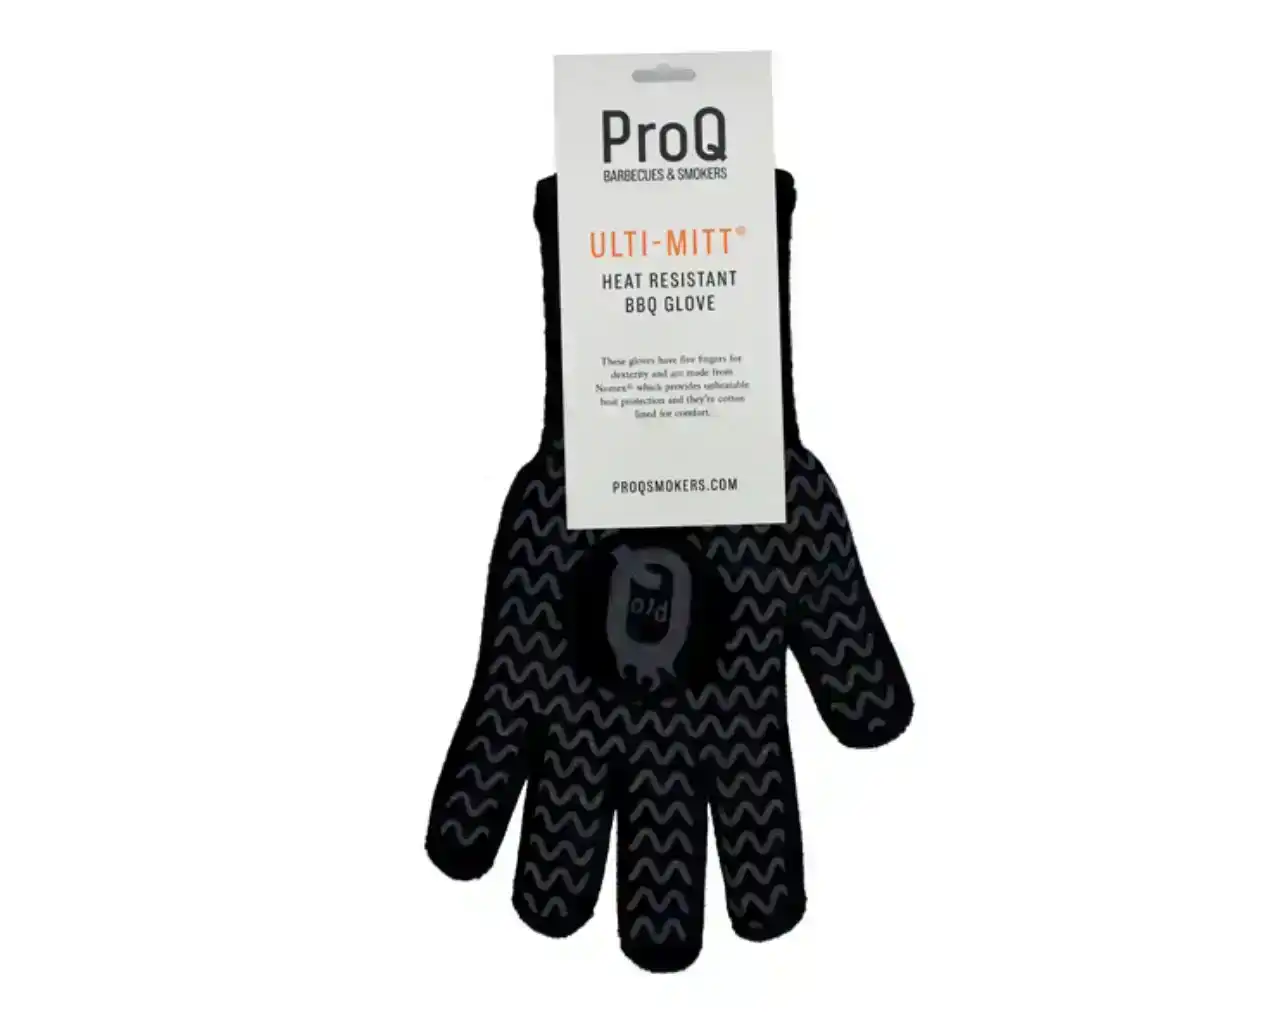 ProQ Ulti-Mitt Heat Resistant BBQ Gloves